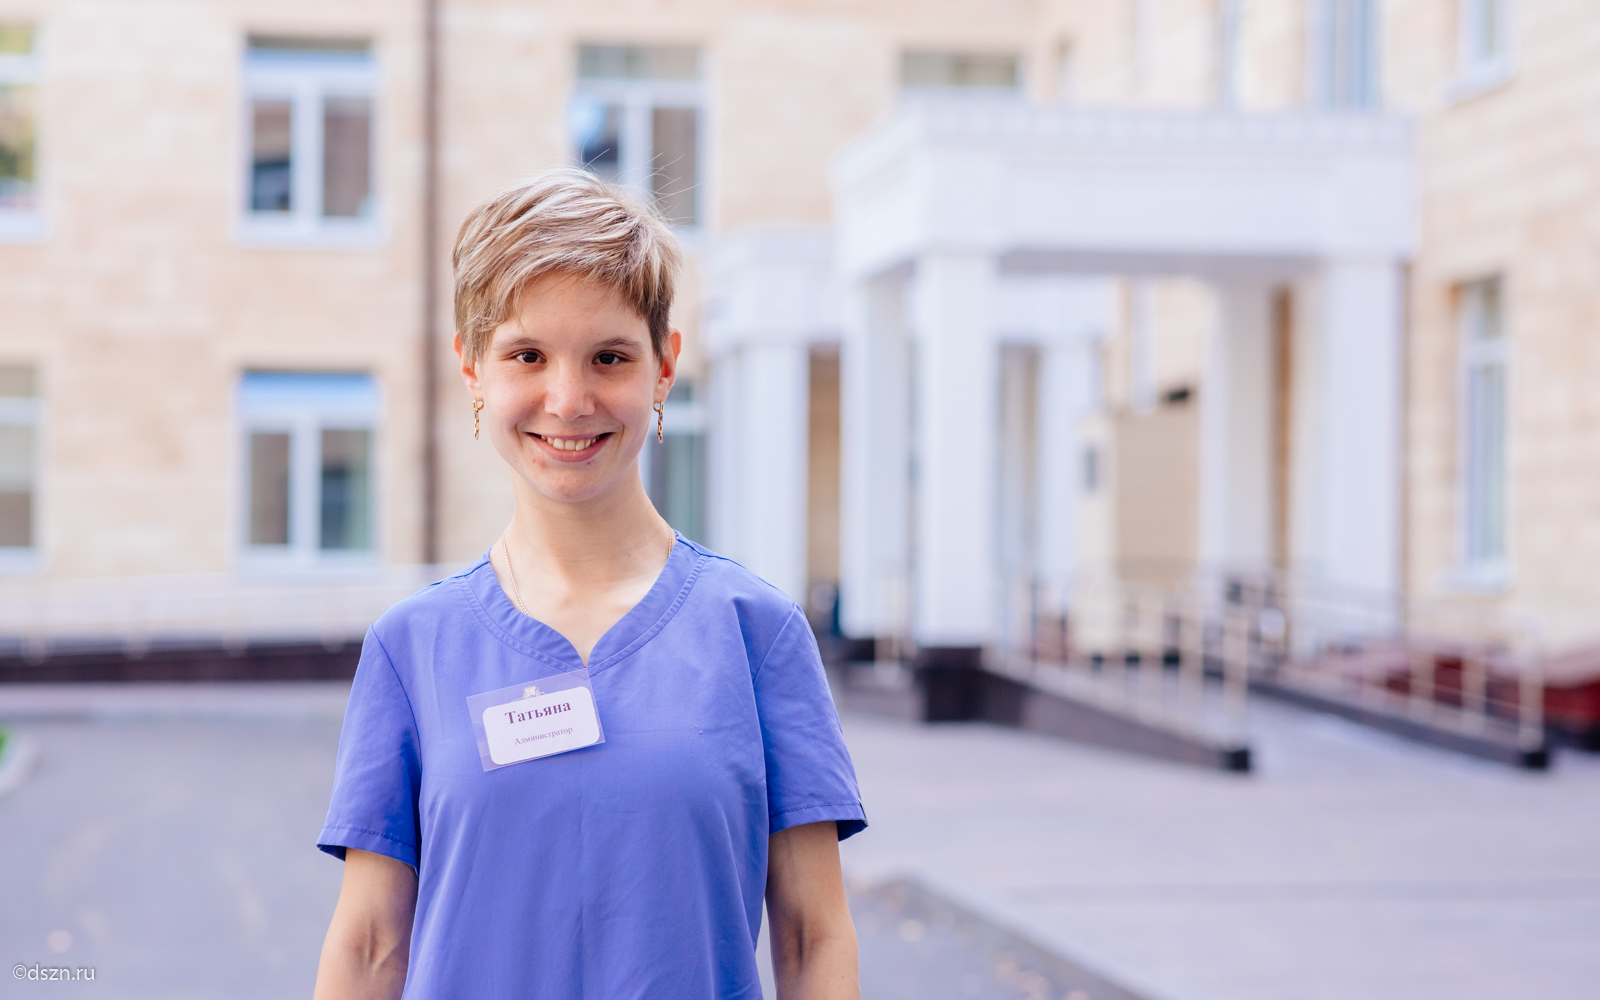 Финалистка проекта Татьяна Белякова работает администратором в Доме сестринского ухода «Люблино».